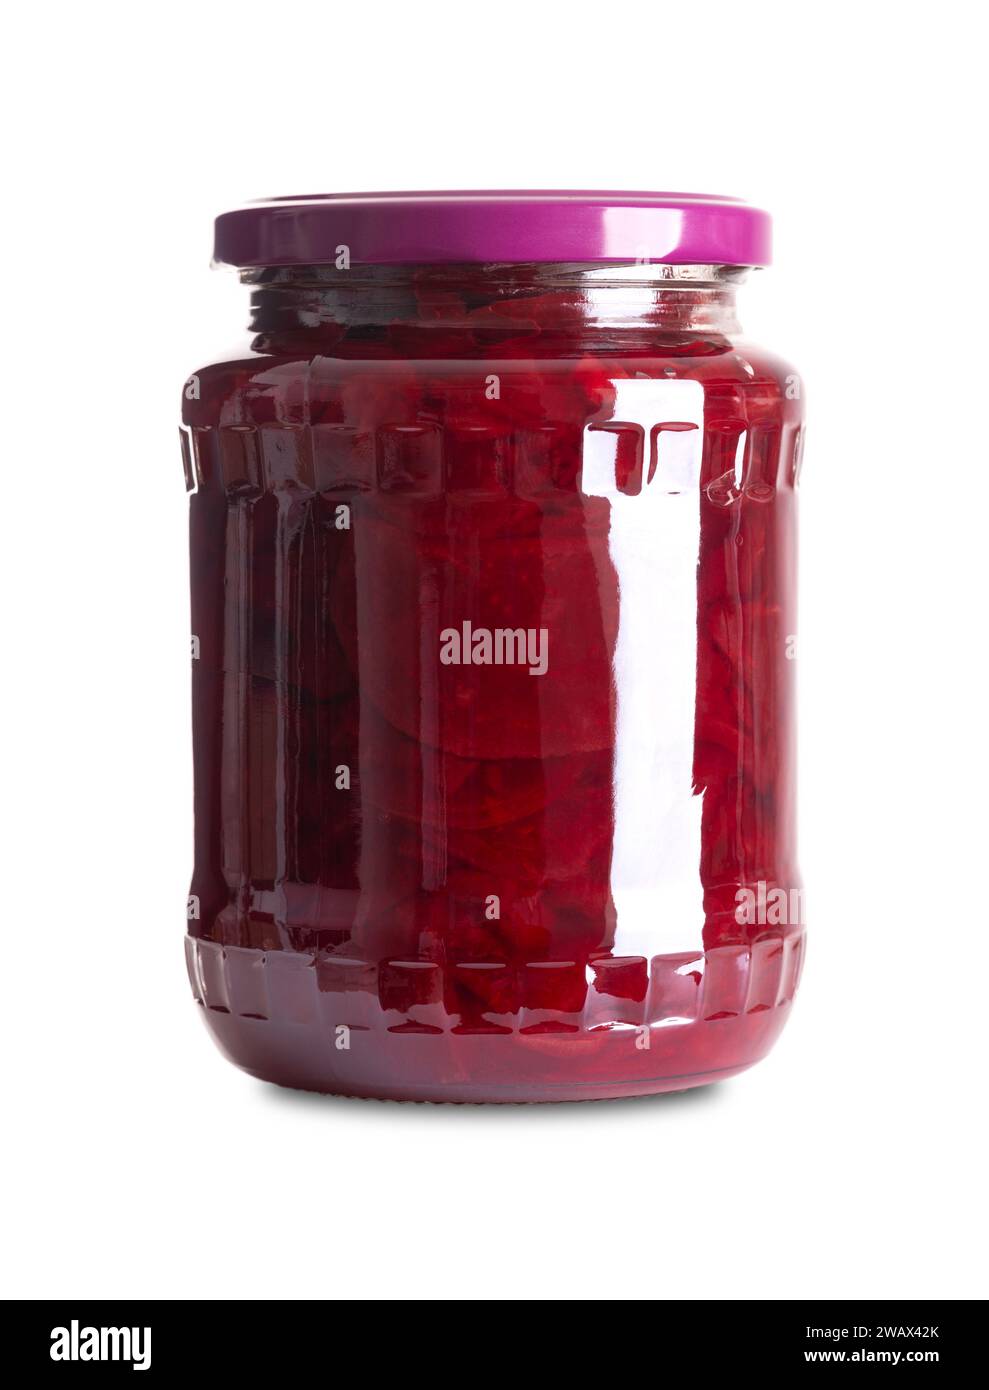 In Scheiben geschnittene Rote Bete in einem Glas. Gekochte, geschnittene rote Rüben, pasteurisiert und in einer Salzlake aus Wasser, Essig und Salz haltbar gemacht. Wird als Salat verwendet. Stockfoto